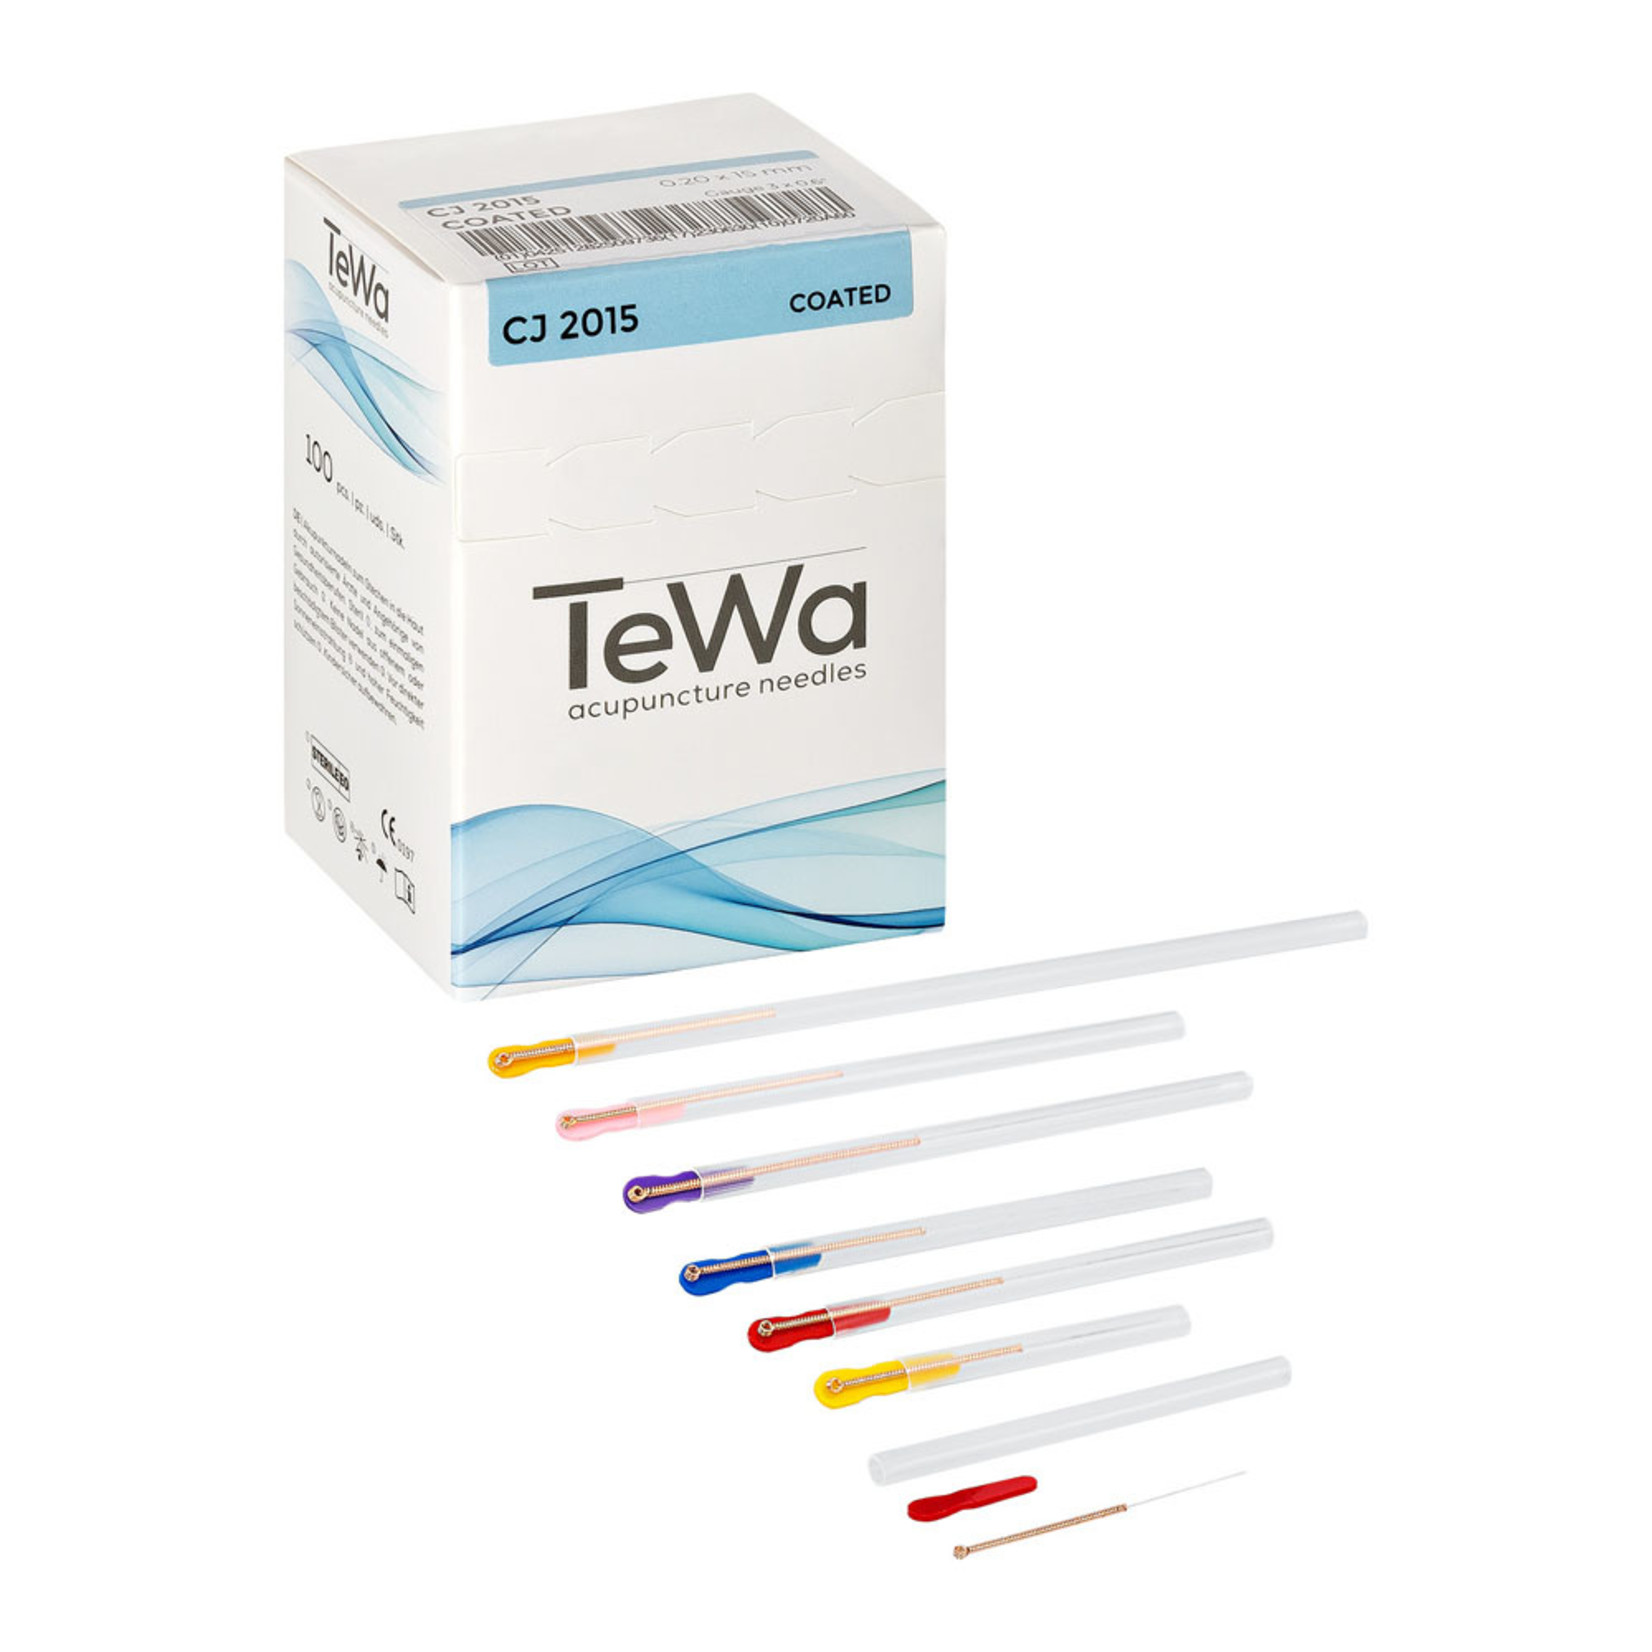 TEWA TEWA COATED ACUPUNCTURE NEEDLE .16 X 15mm BOX OF 100